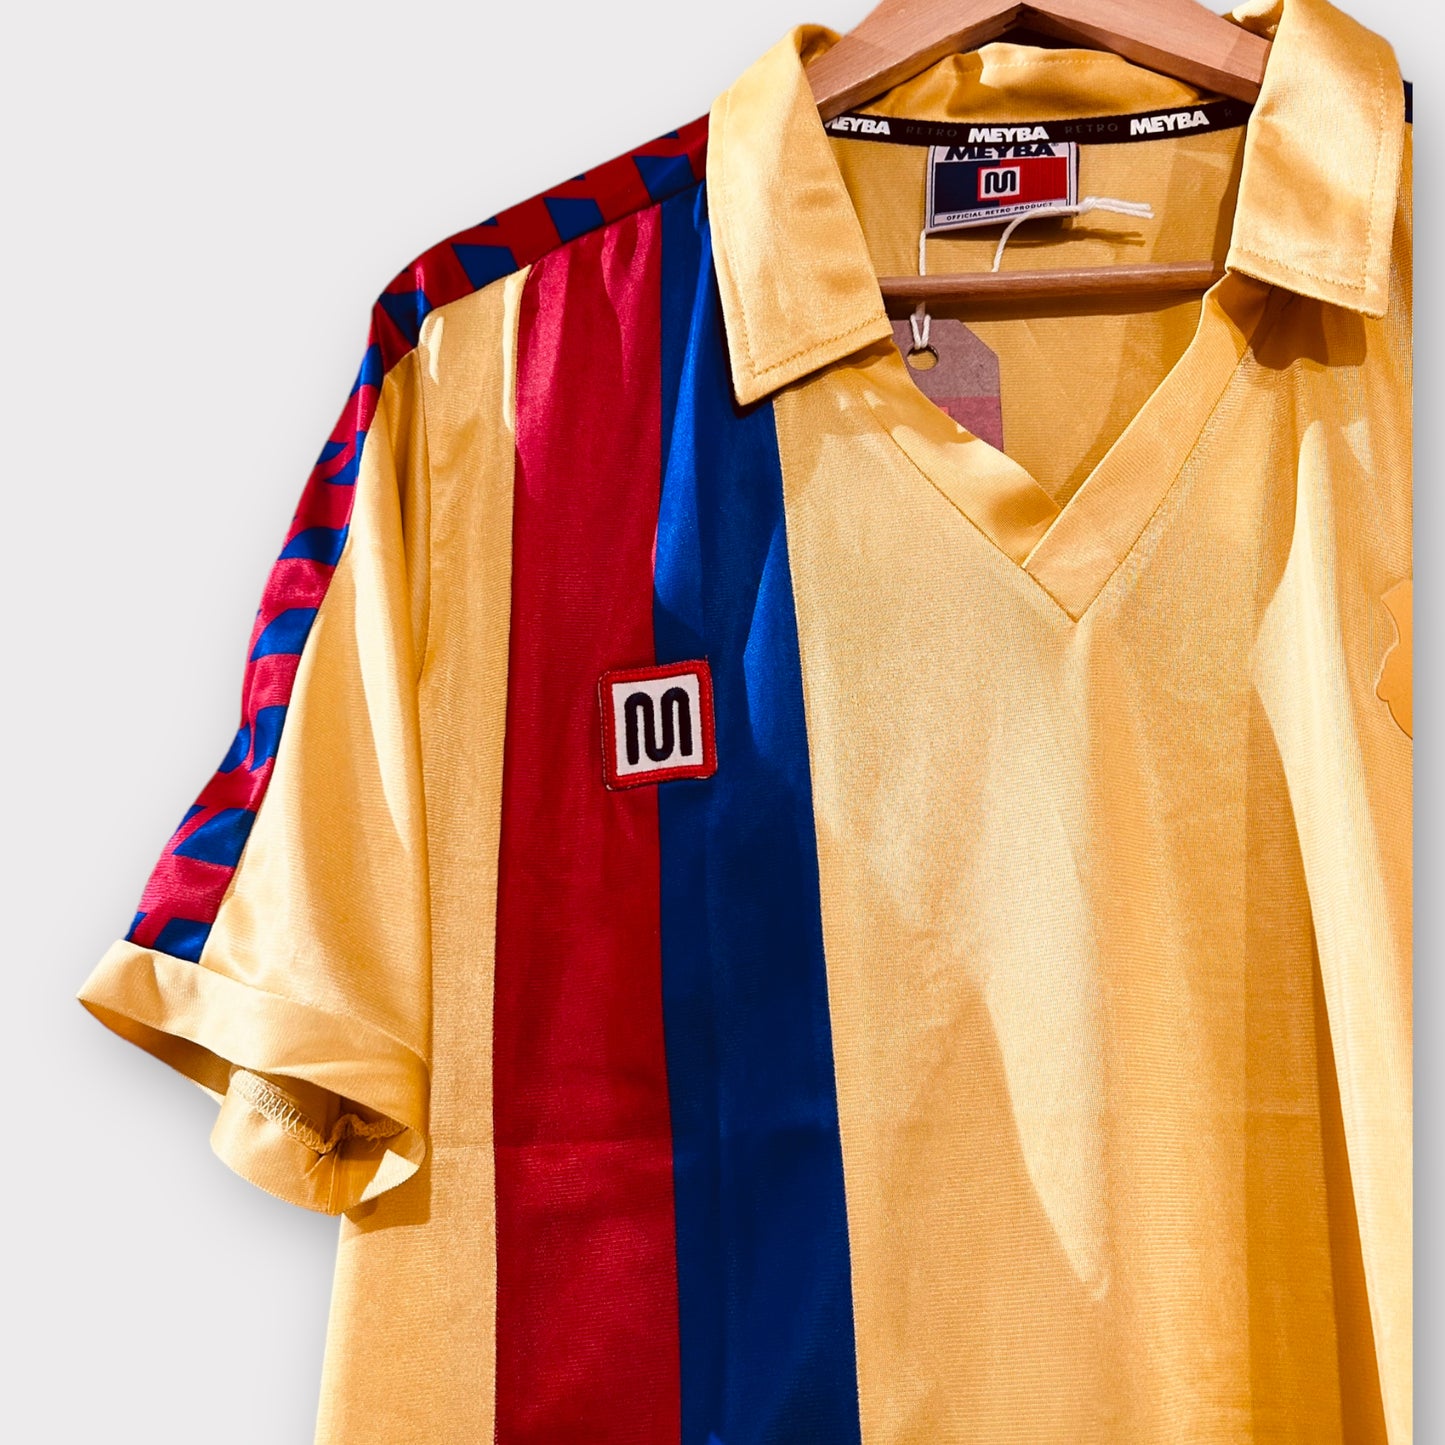 Blaugrana (Barca) 1981-85 Away Shirt (Various Sizes)